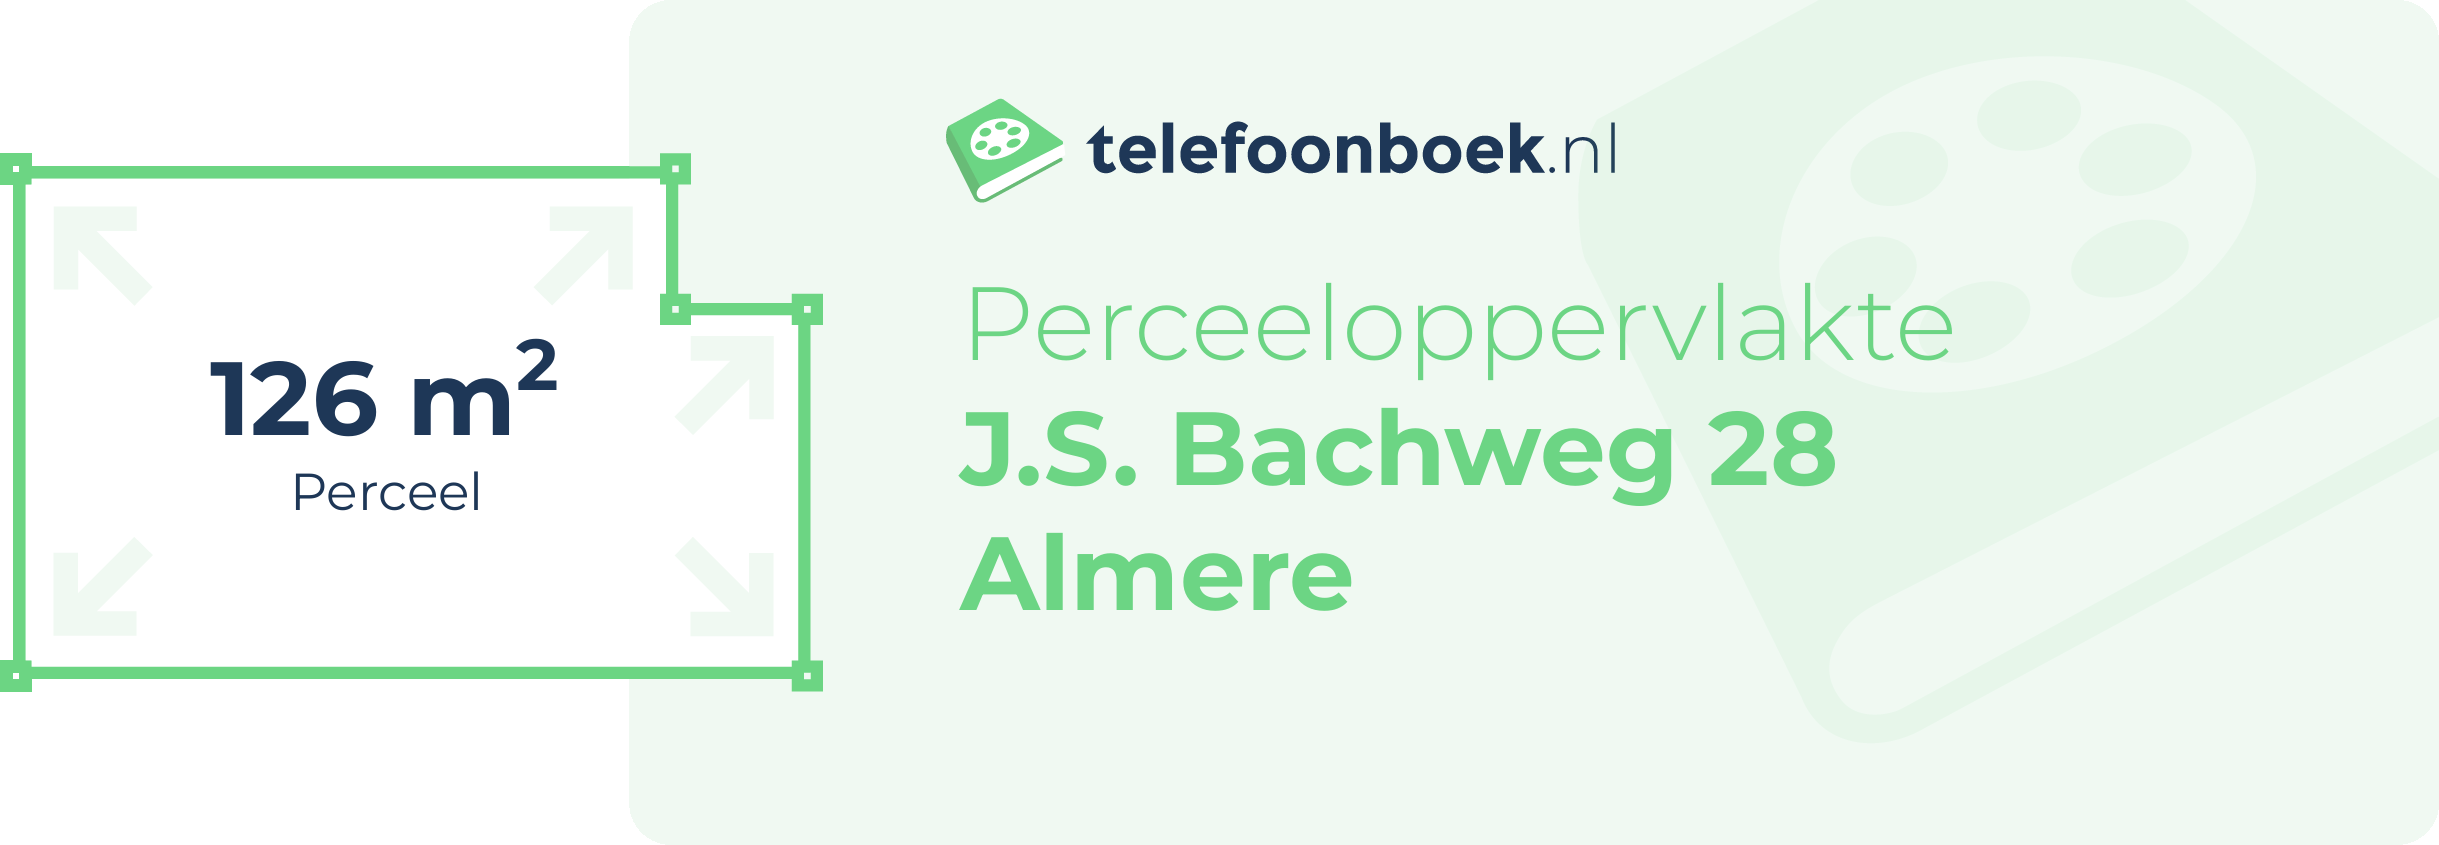 Perceeloppervlakte J.S. Bachweg 28 Almere